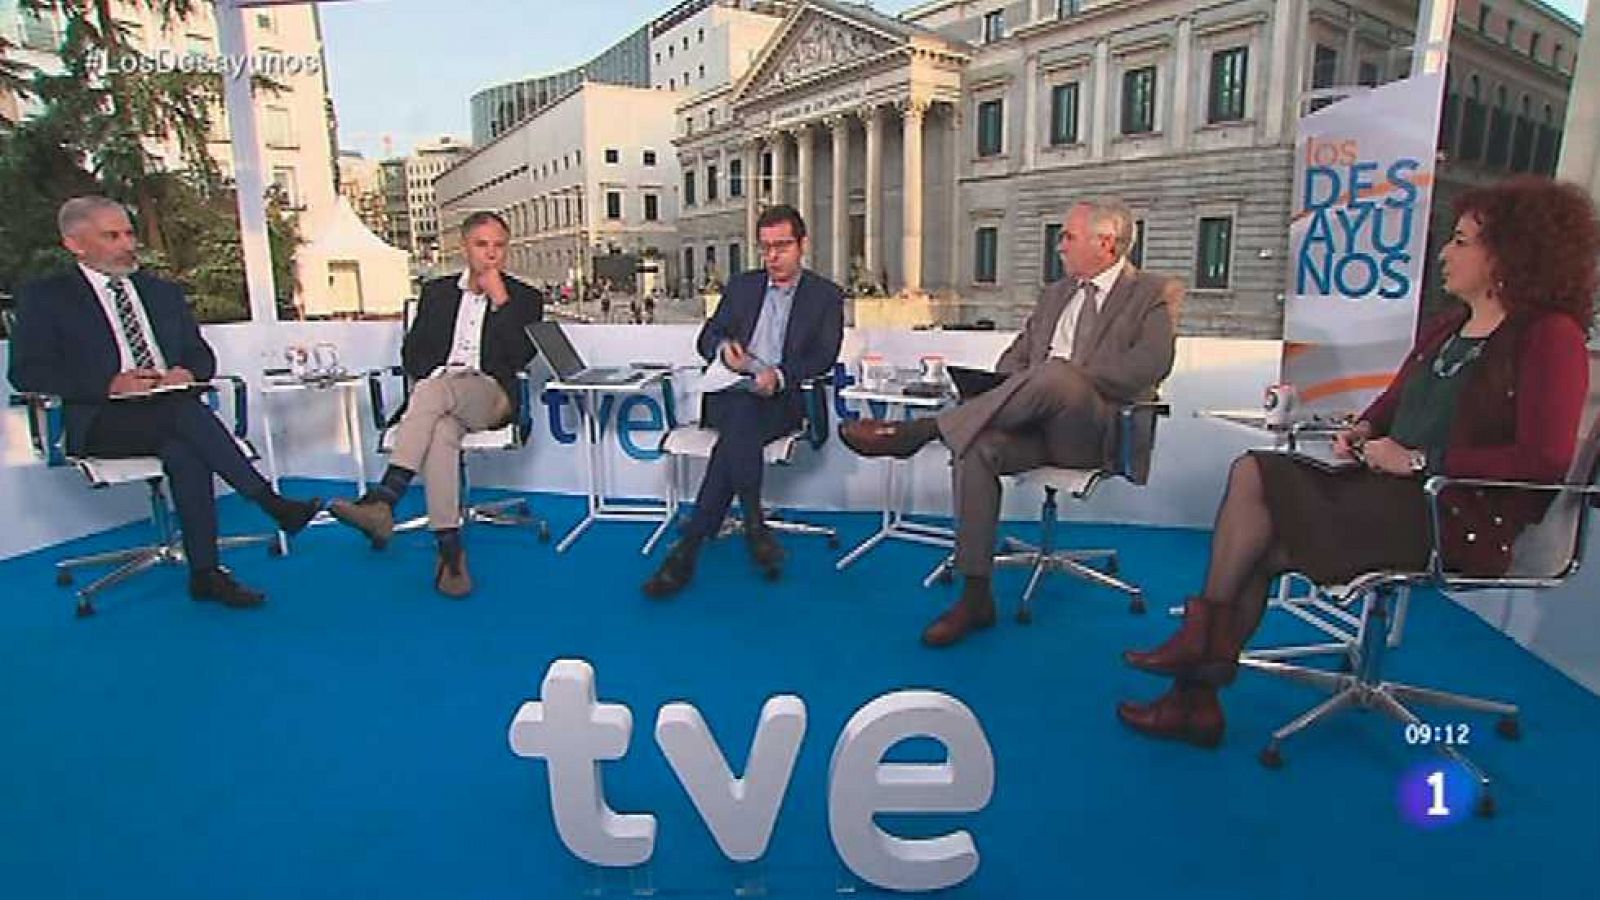 Los desayunos de TVE - Previo Sesión investidura de Mariano Rajoy